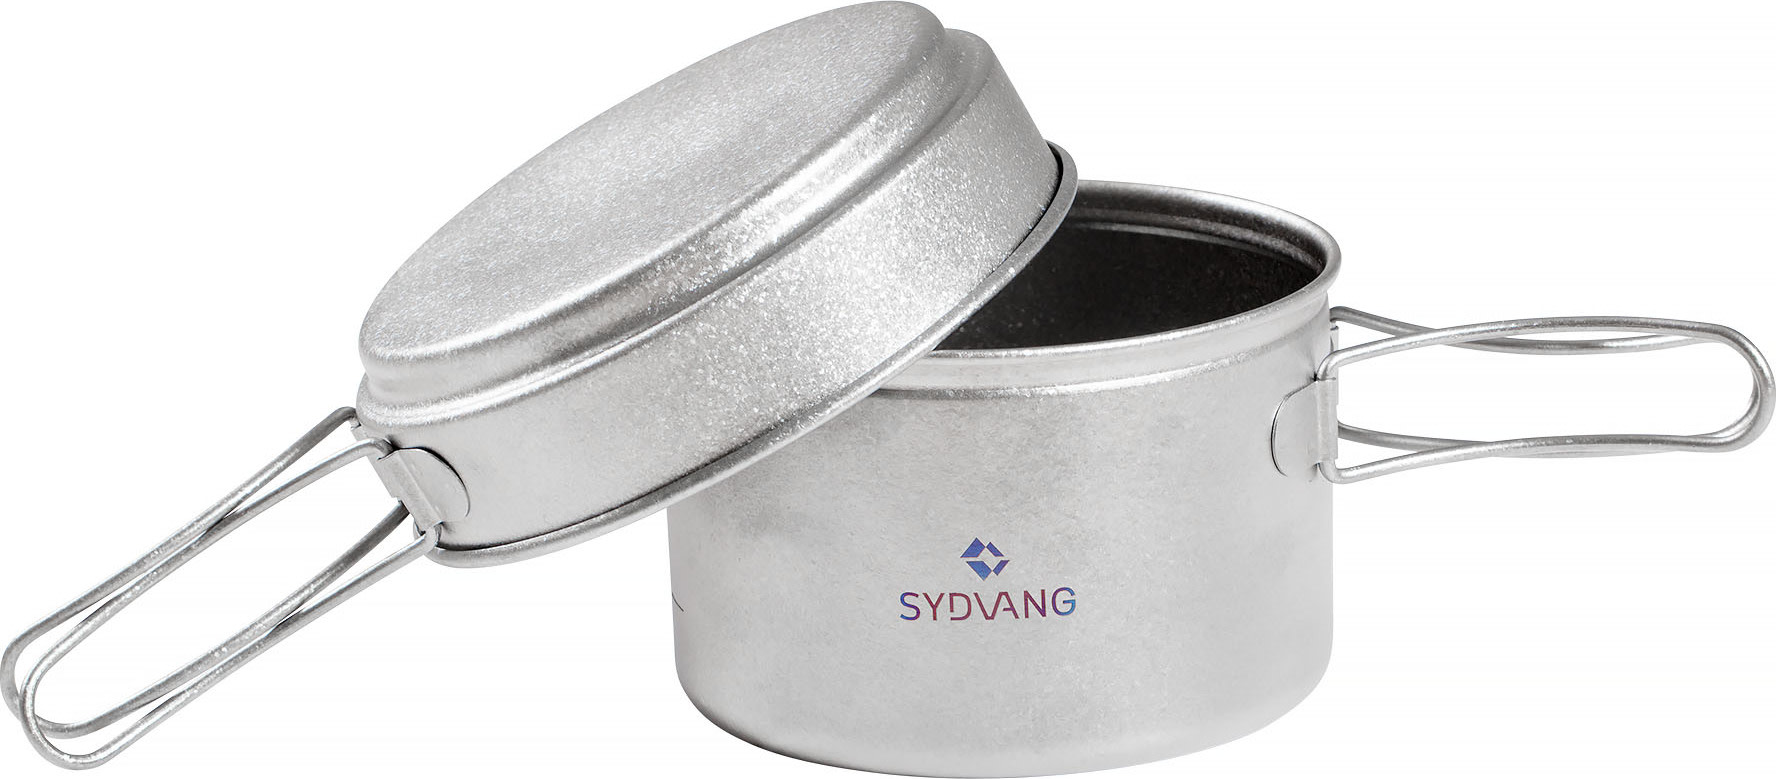 Sydvang Sydvang Titan Cookware Silver OneSize, Silver